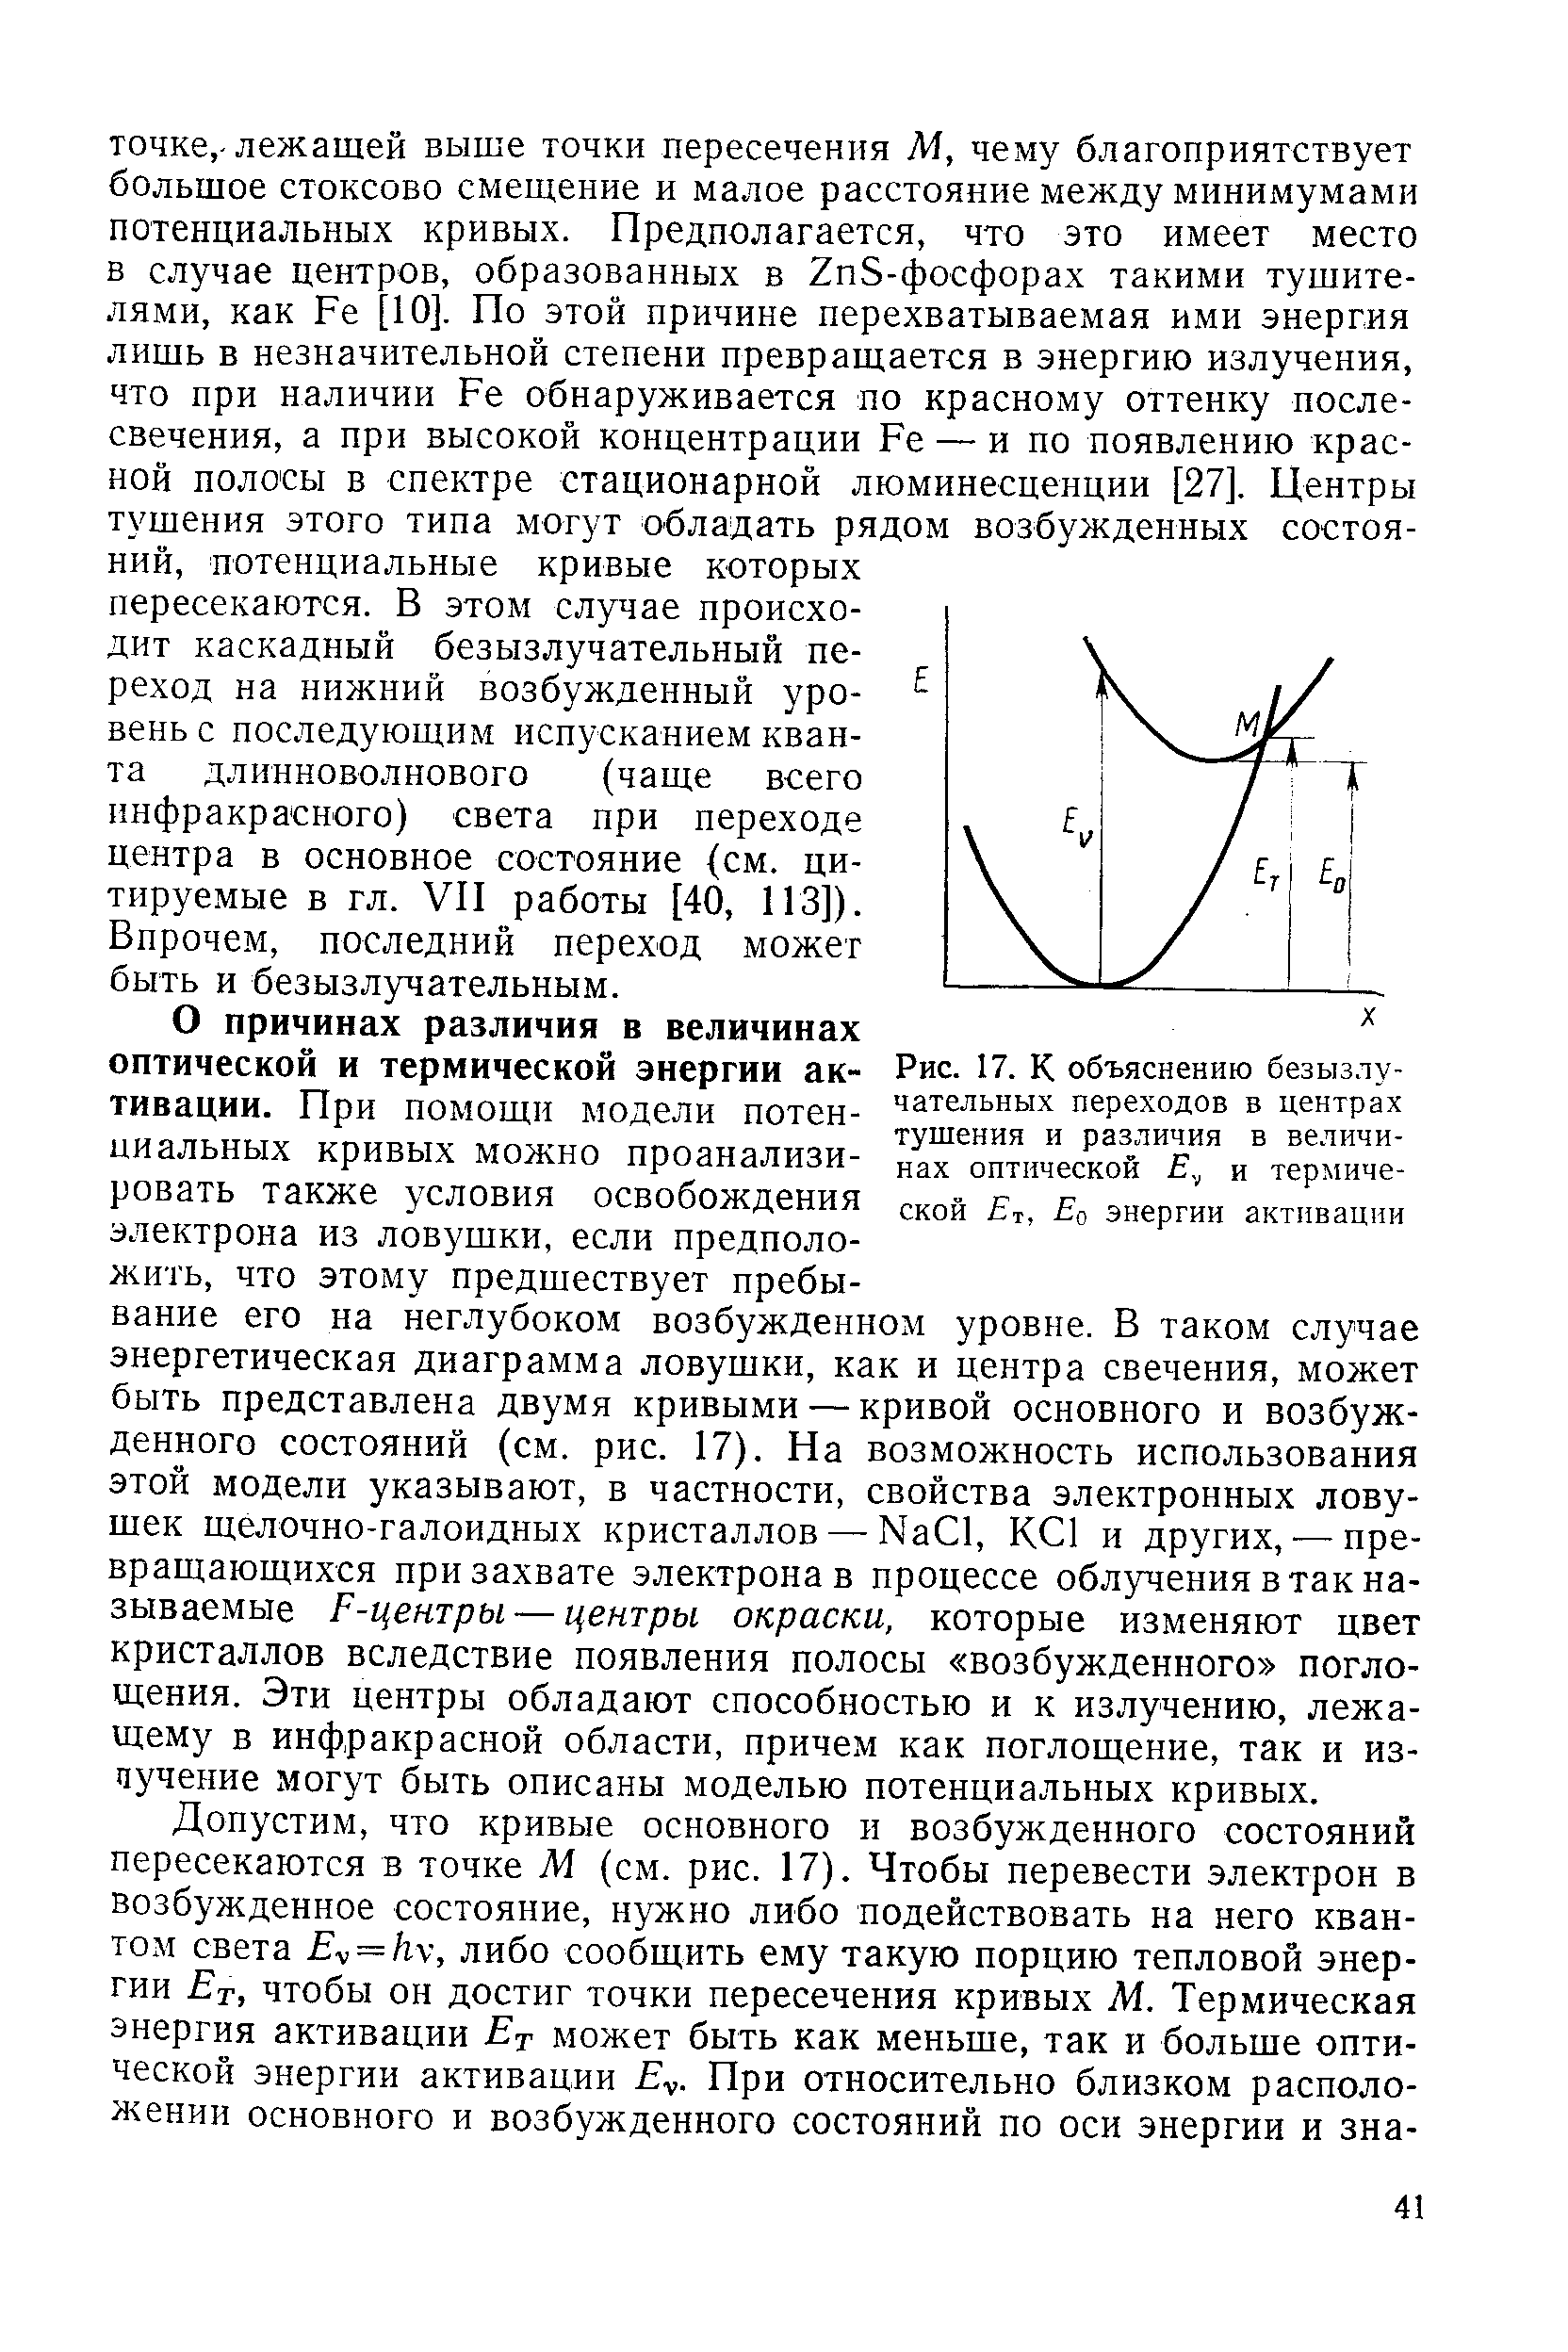 О причинах различия в величинах оптической и термической энергии активации. При помощи модели потенциальных кривых можно проанализировать также условия освобождения электрона из ловушки, если предположить, что этому предшествует пребывание его на неглубоком возбужденном уровне. В таком случае энергетическая диаграмма ловушки, как и центра свечения, может быть представлена двумя кривыми — кривой основного и возбужденного состояний (см. рис. 17). На возможность использования этой модели указывают, в частности, свойства электронных ловушек щелочно-галоидных кристаллов — Na l, K l и других, —превращающихся при захвате электрона в процессе облучения в так называемые F-центры — центры окраски, которые изменяют цвет кристаллов вследствие появления полосы возбужденного поглощения. Эти центры обладают способностью и к излучению, лежащему в инфракрасной области, причем как поглощение, так и из-чучение могут быть описаны моделью потенциальных кривых.